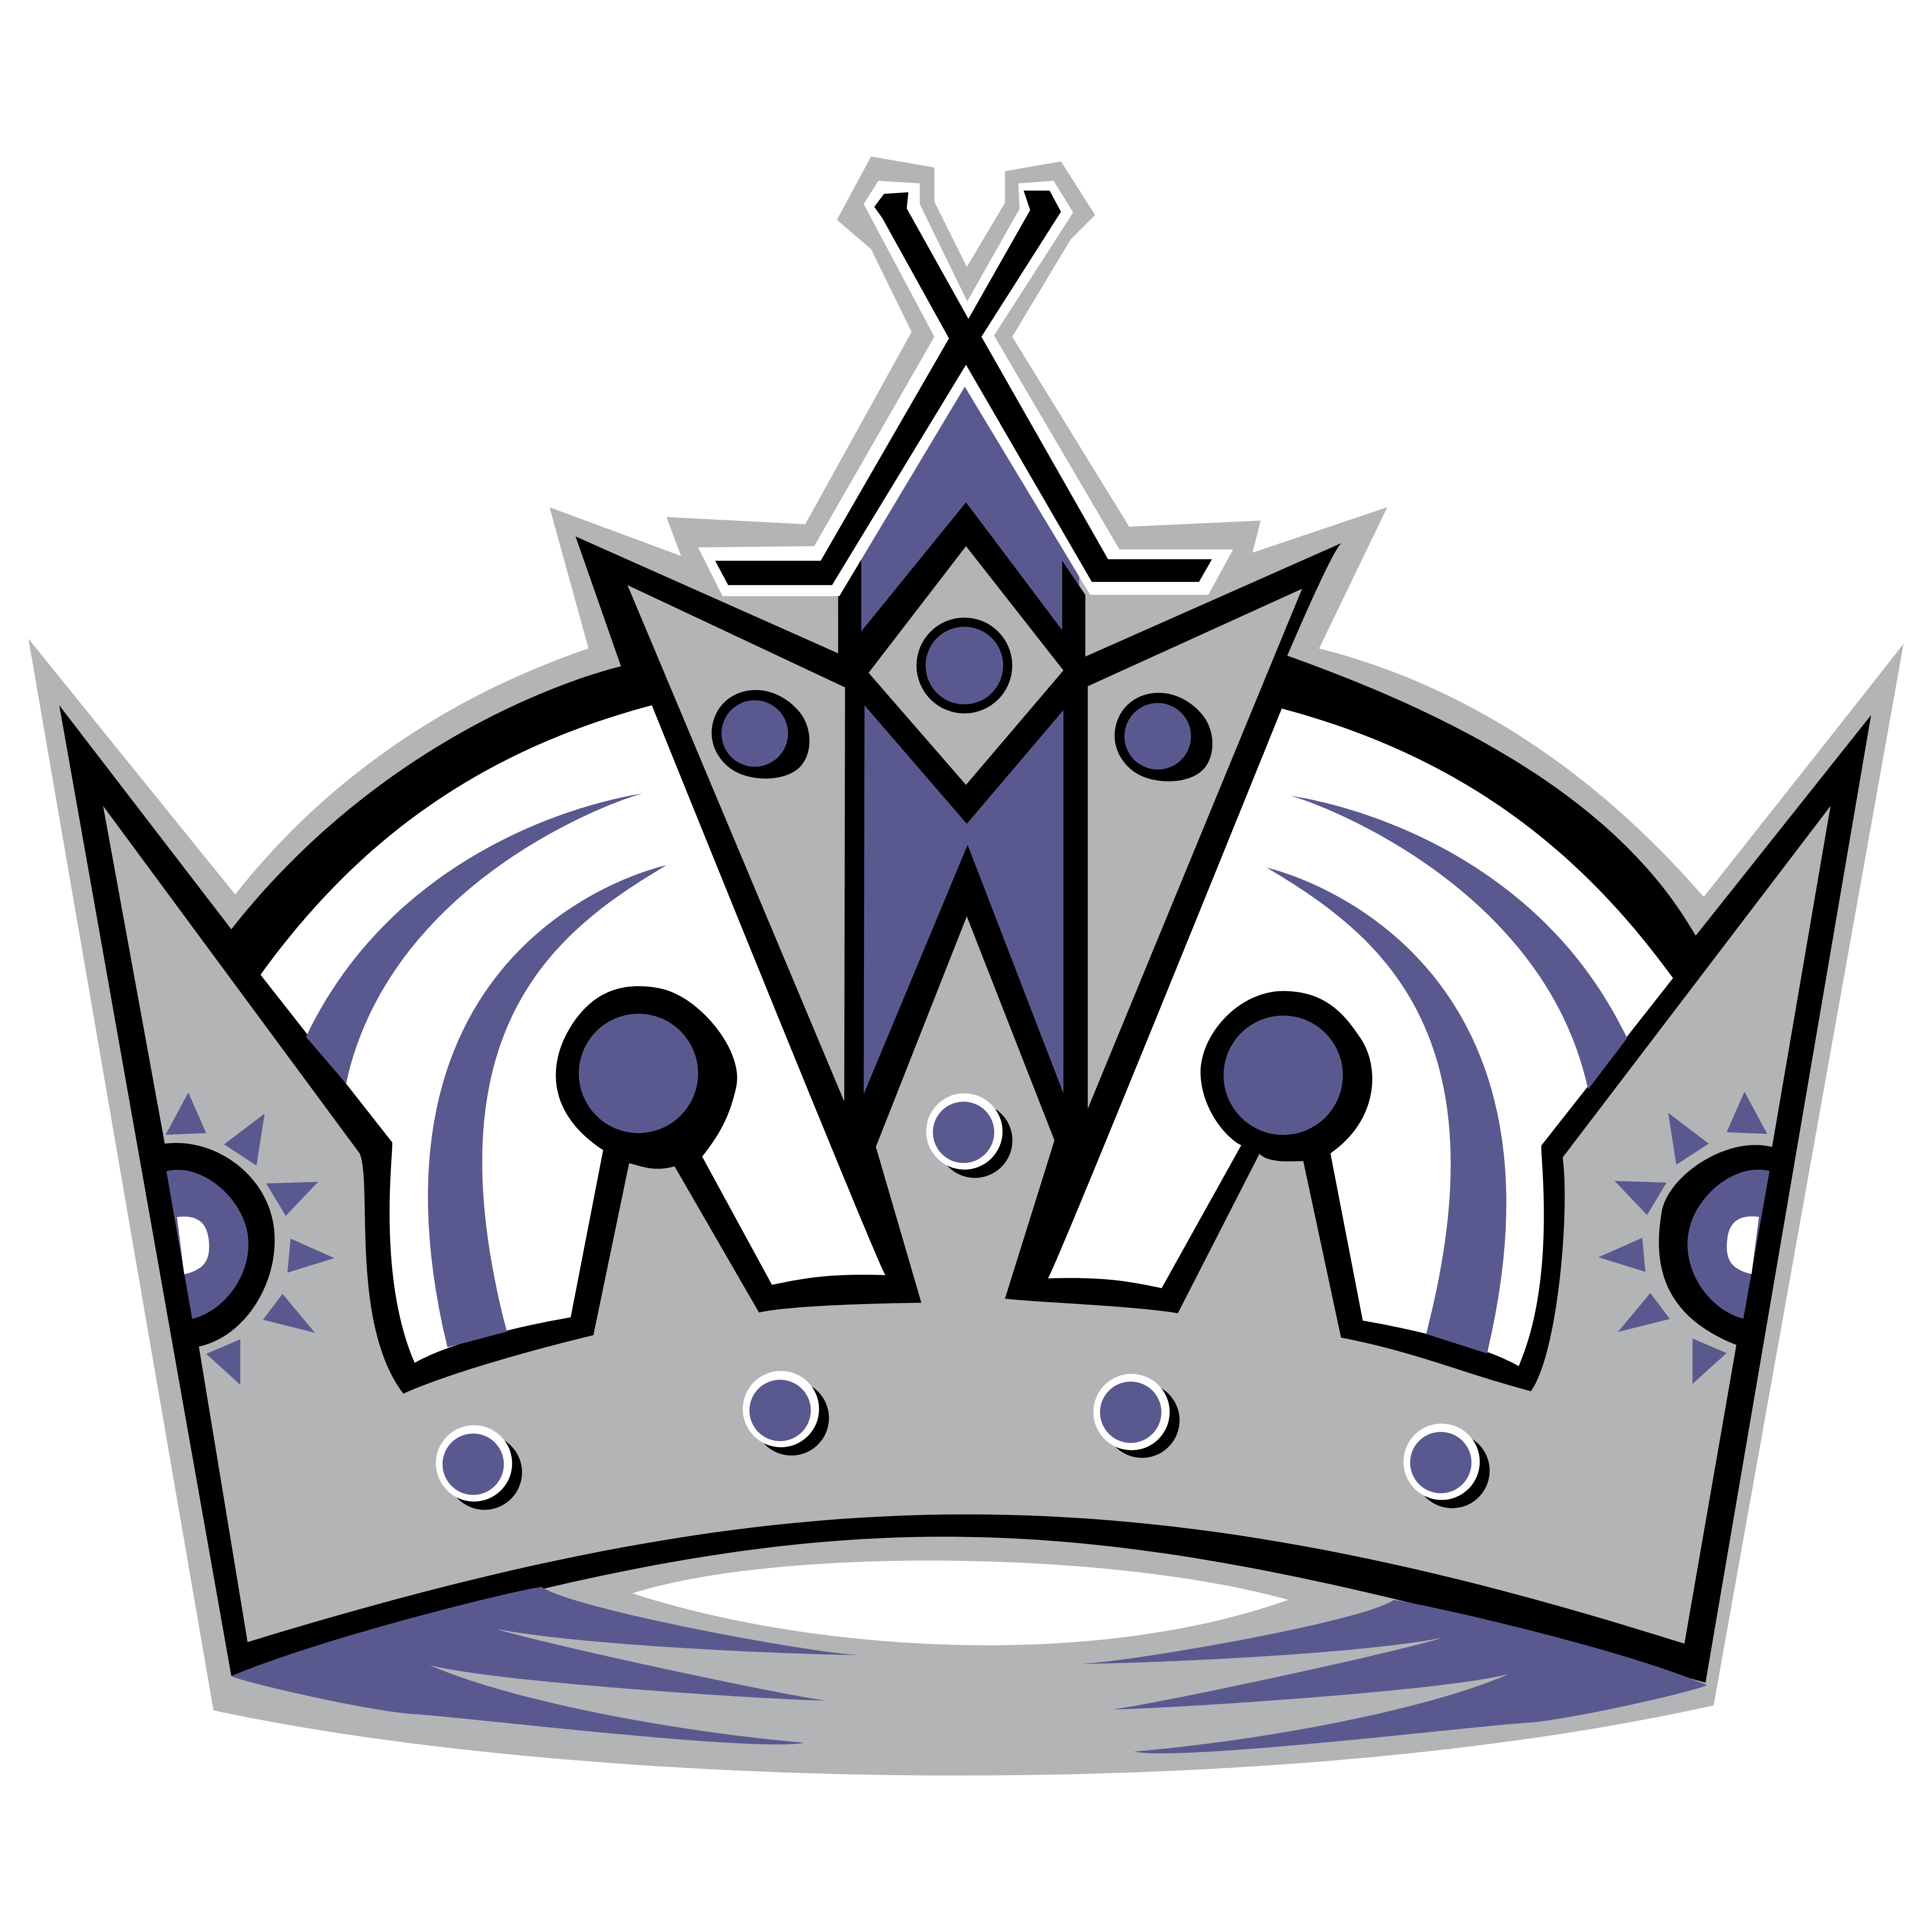 Los Angeles Kings Logo - Los Angeles Kings – Logos Download